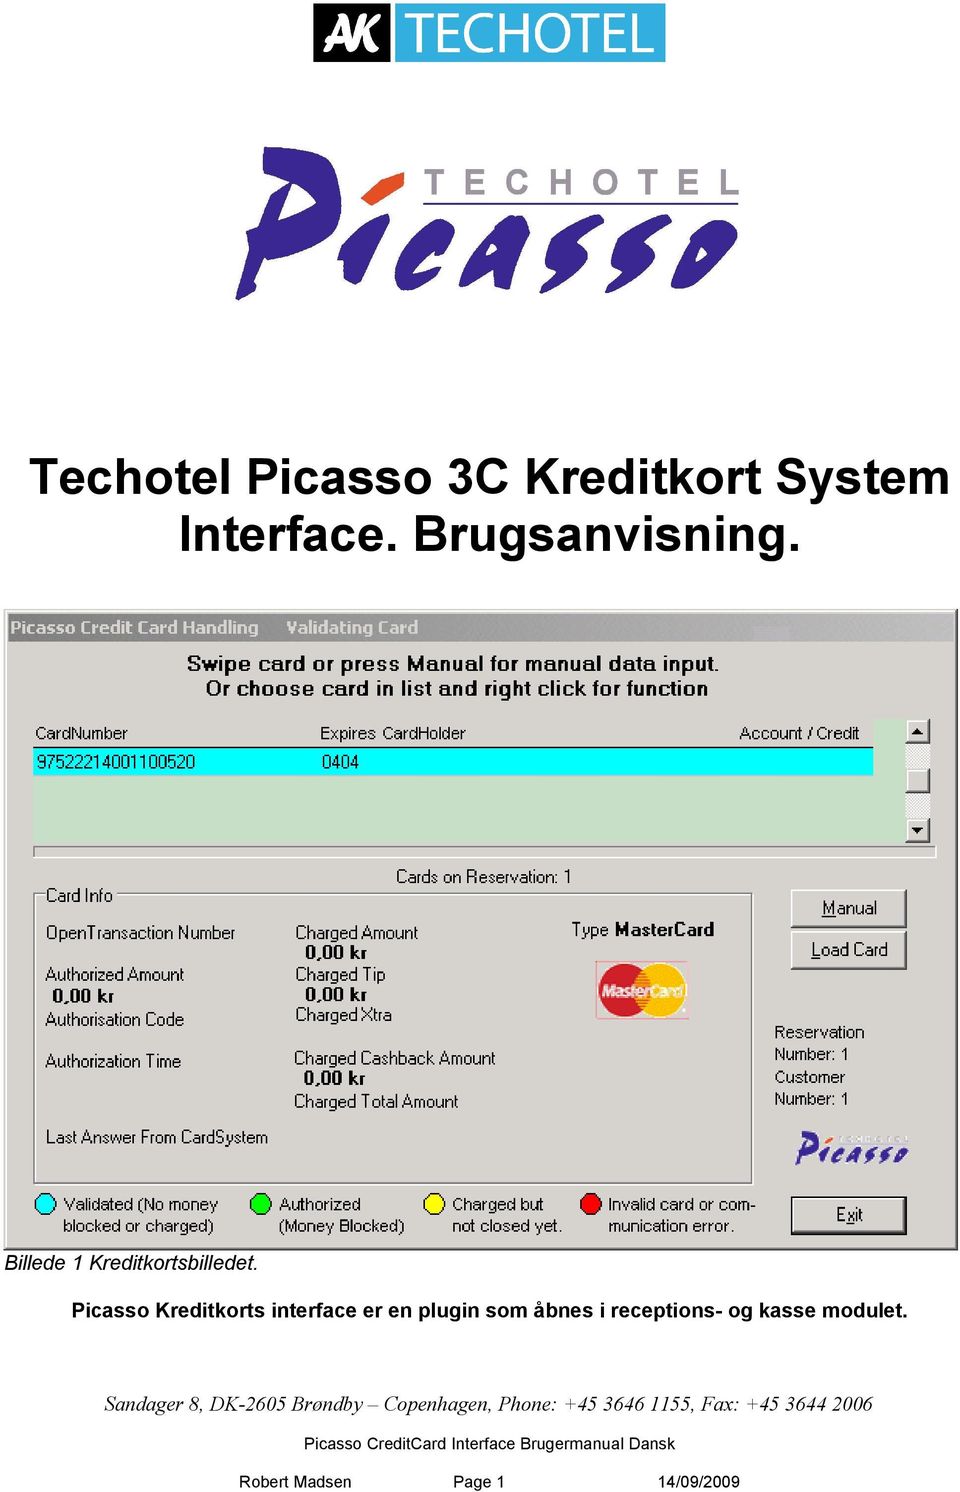 Picasso Kreditkorts interface er en plugin som åbnes